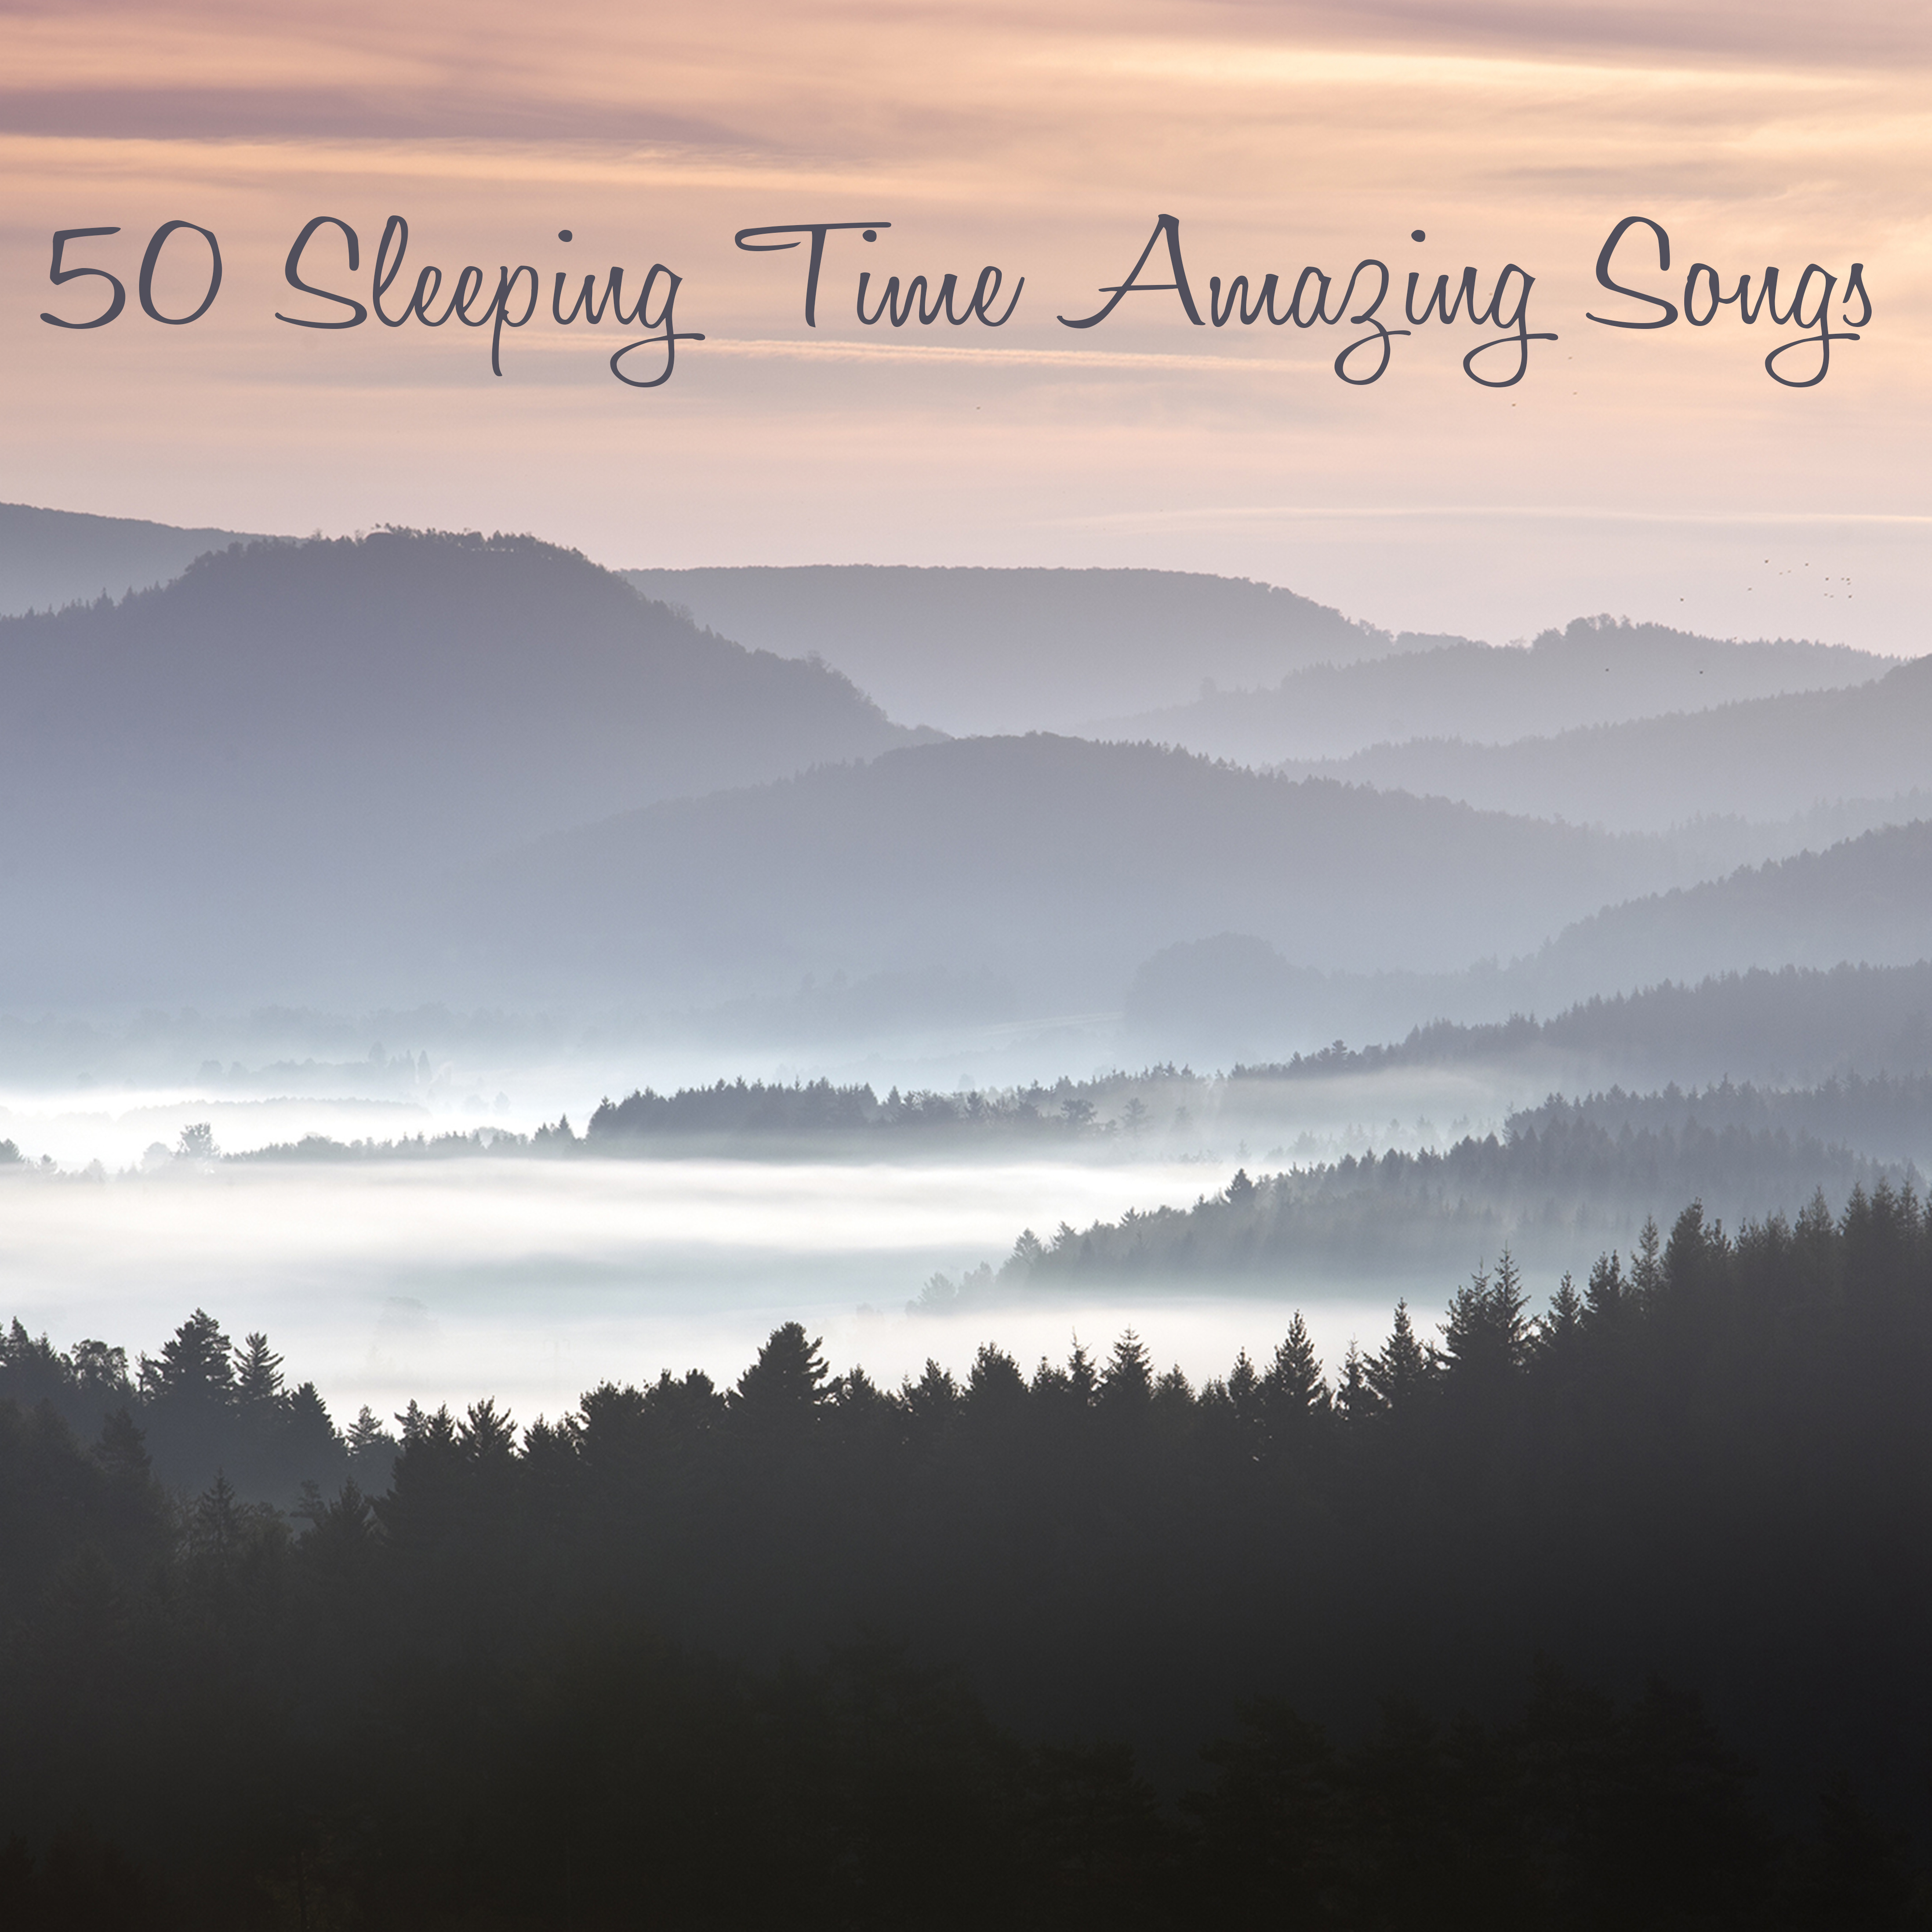 50 Sleeping Time Amazing Songs - Good Night Sleep Sweet Baby